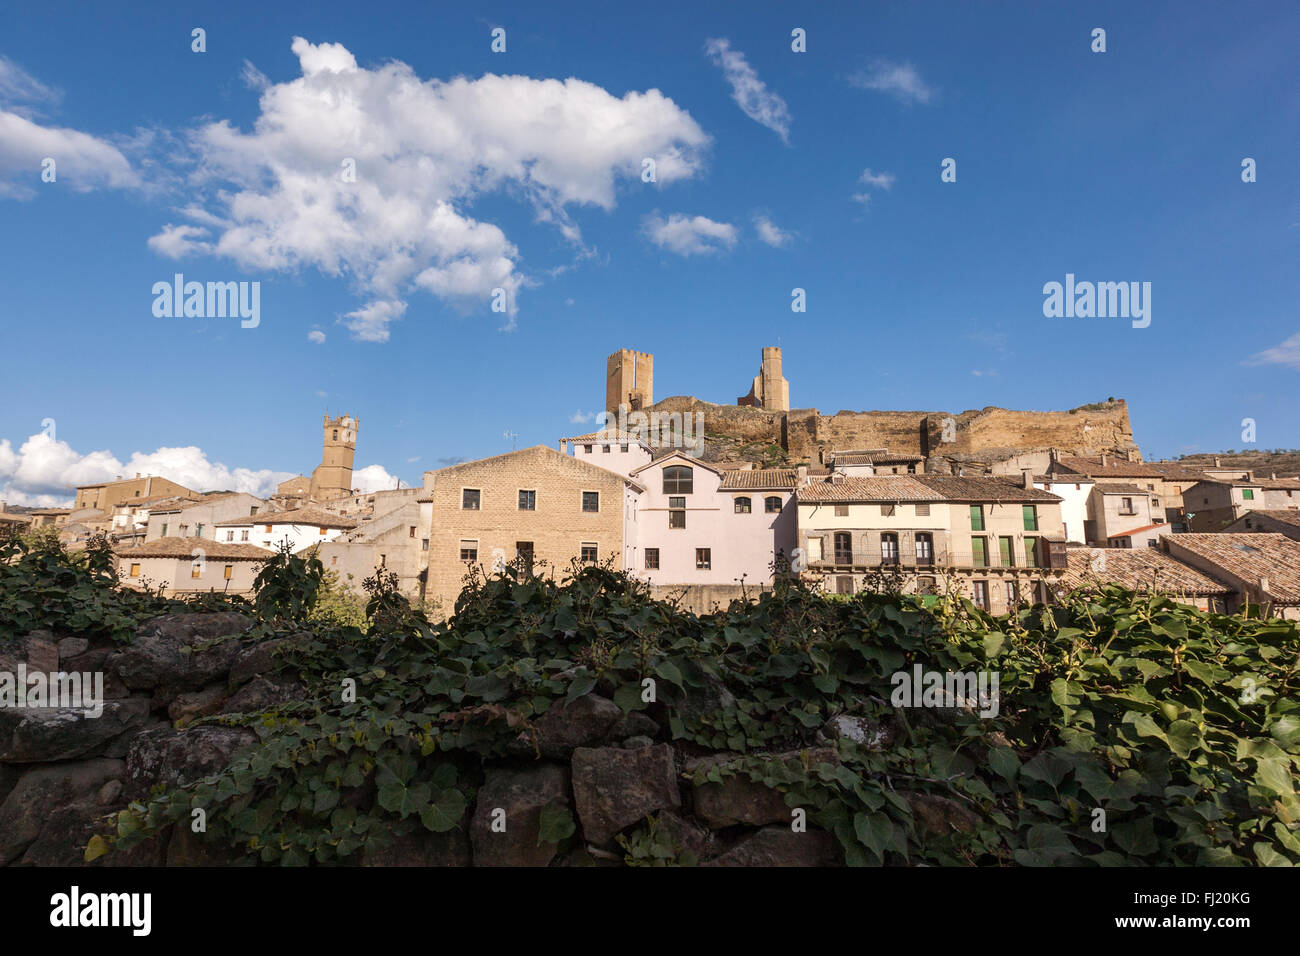 View of Uncastillo and castle, Cinco Villas, Zaragoza Province, Aragon, Spain Stock Photo